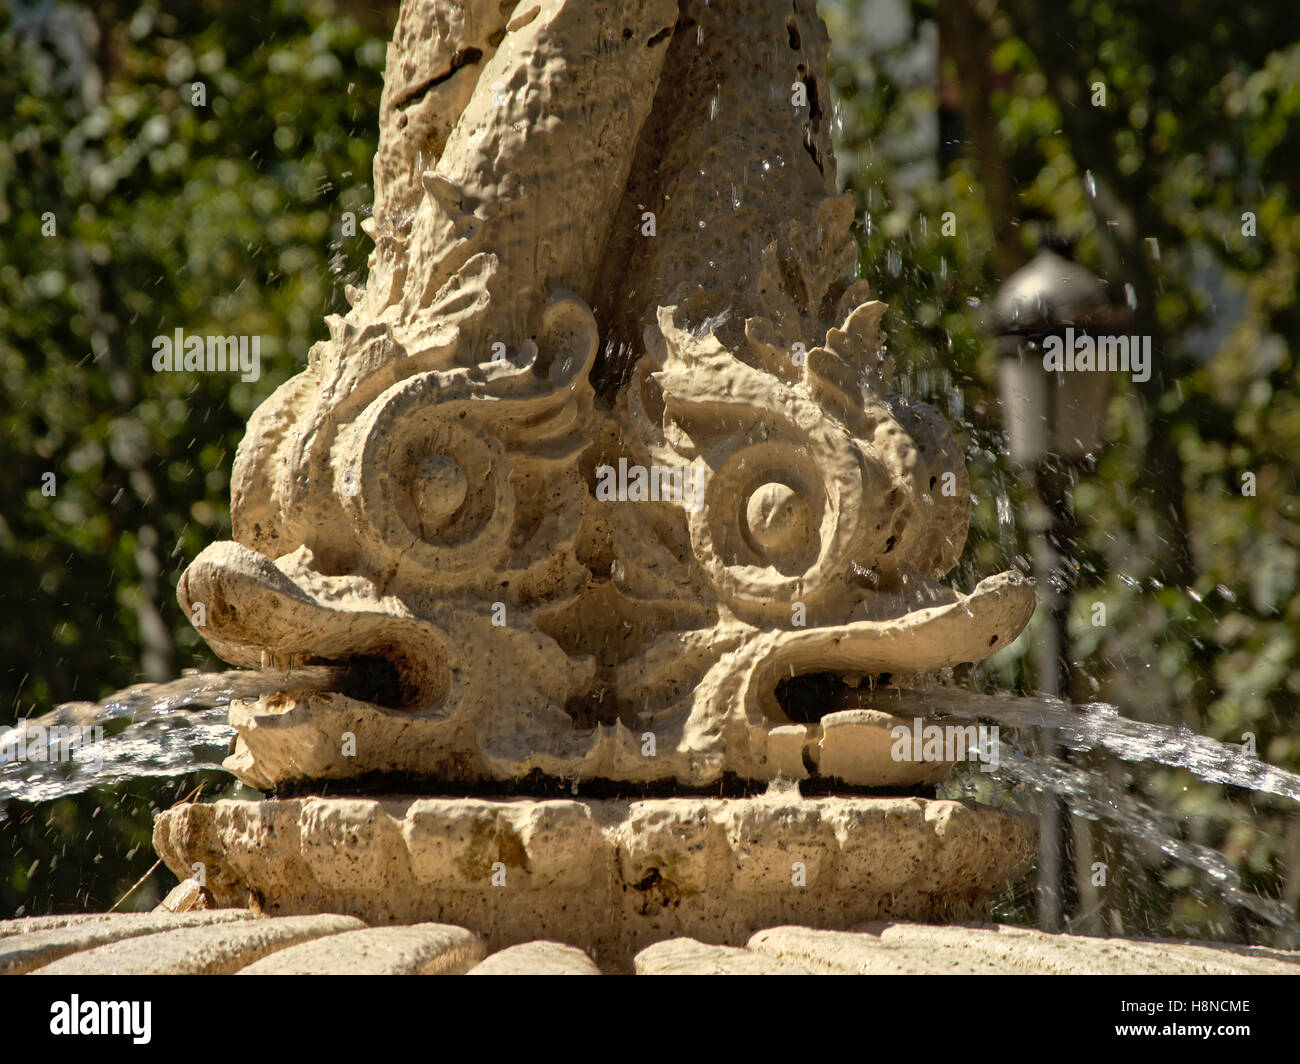 Fontaine en pierre avec des sculptures de tête de poisson, close-up Banque D'Images